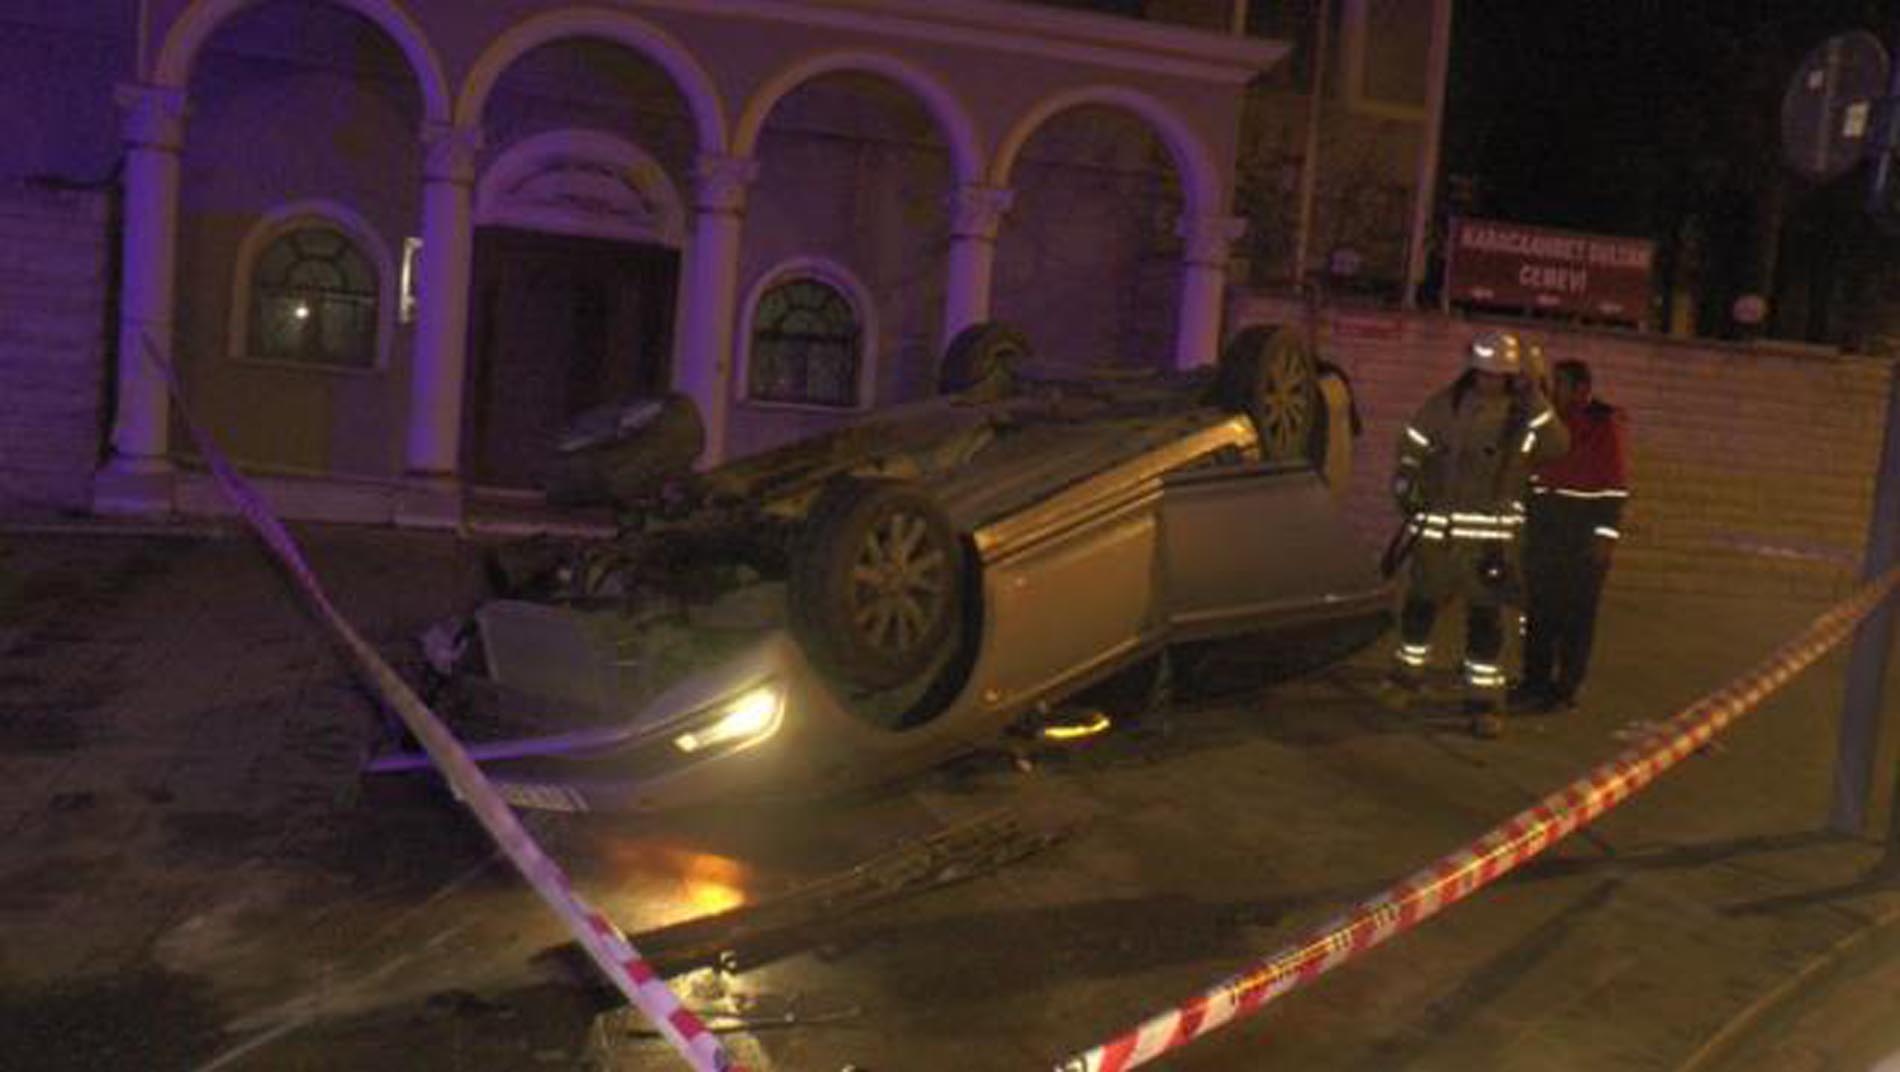 Üsküdar'da lüks araç taklalar atarak savruldu! Araçtan çıkarılan adam sedye üstünde canlı yayın açıp kazayı aktardı!